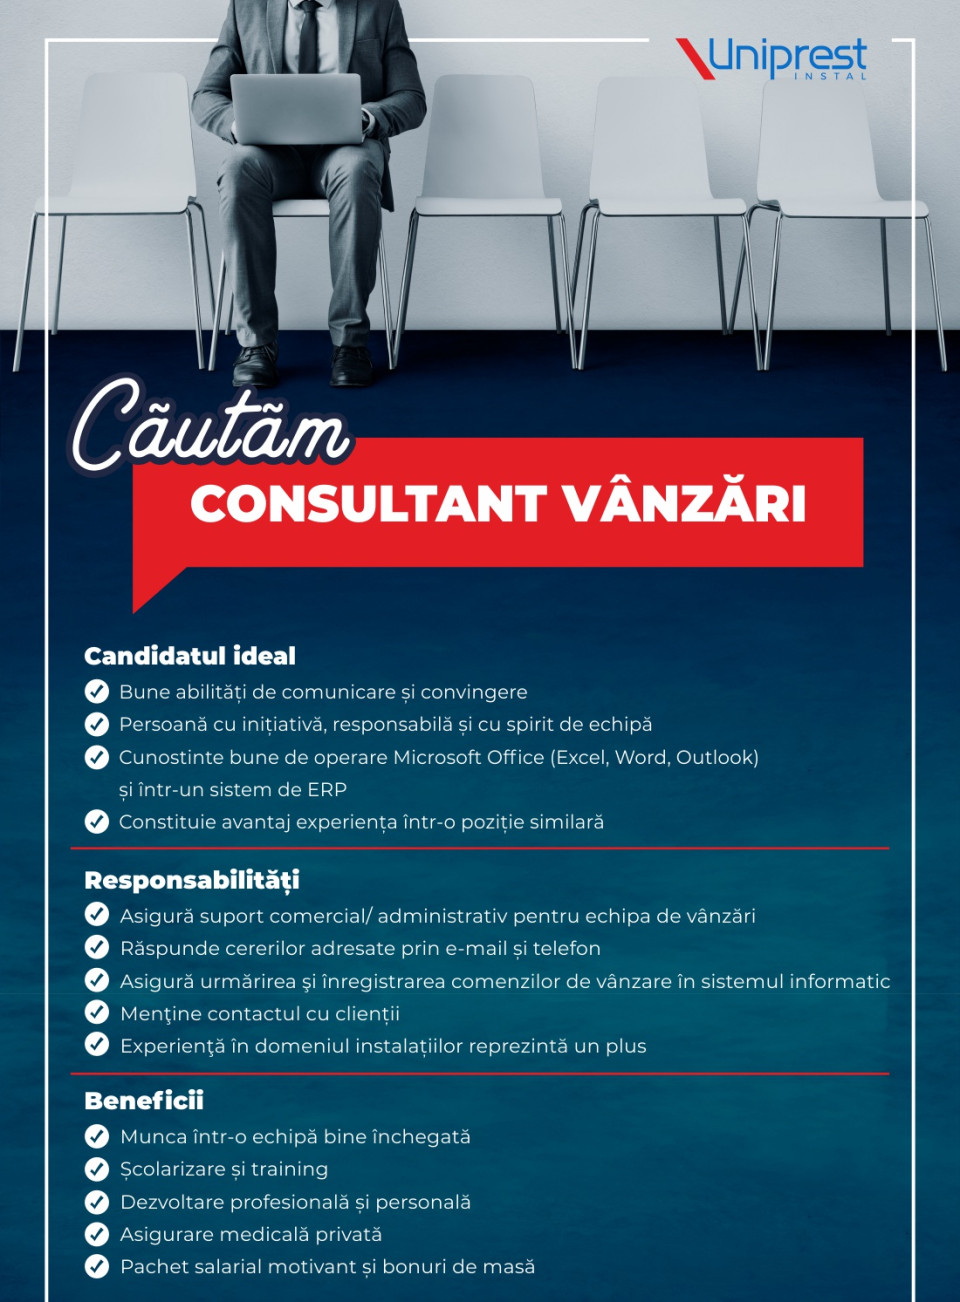 Consultant Vanzari